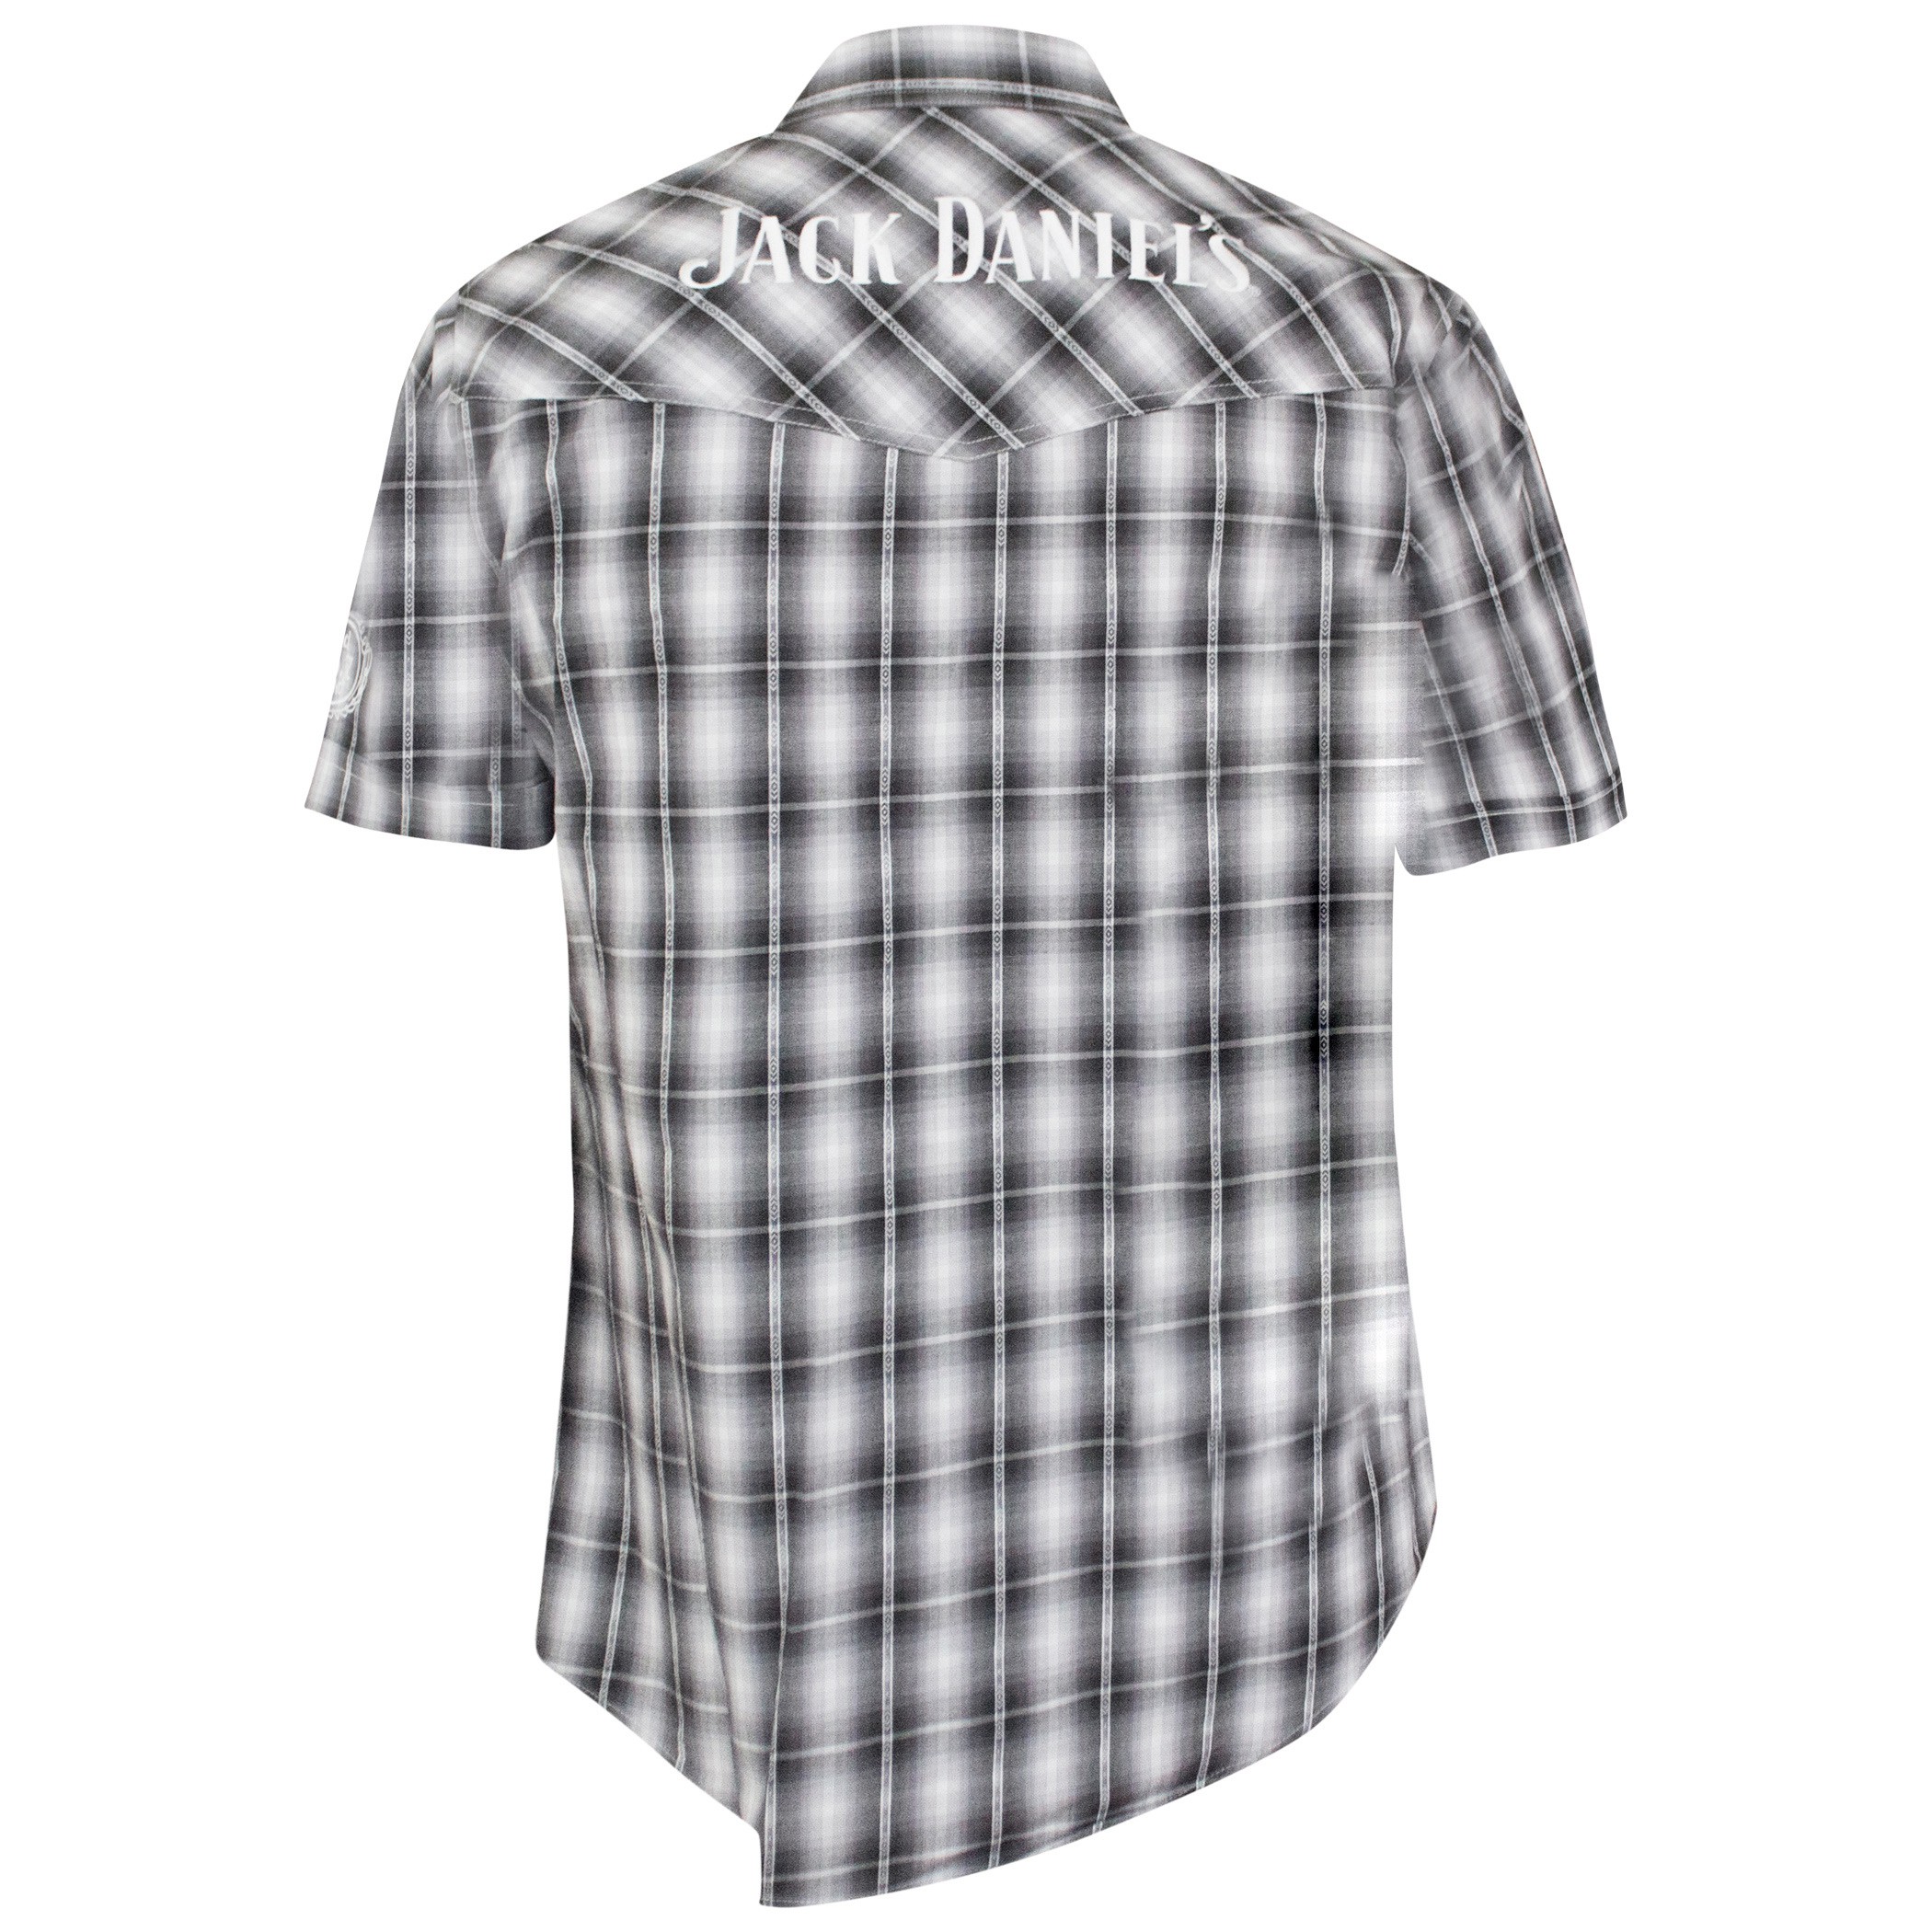 Jack Daniels Textured Plaid Short Sleeve Button Up Tee Shirt